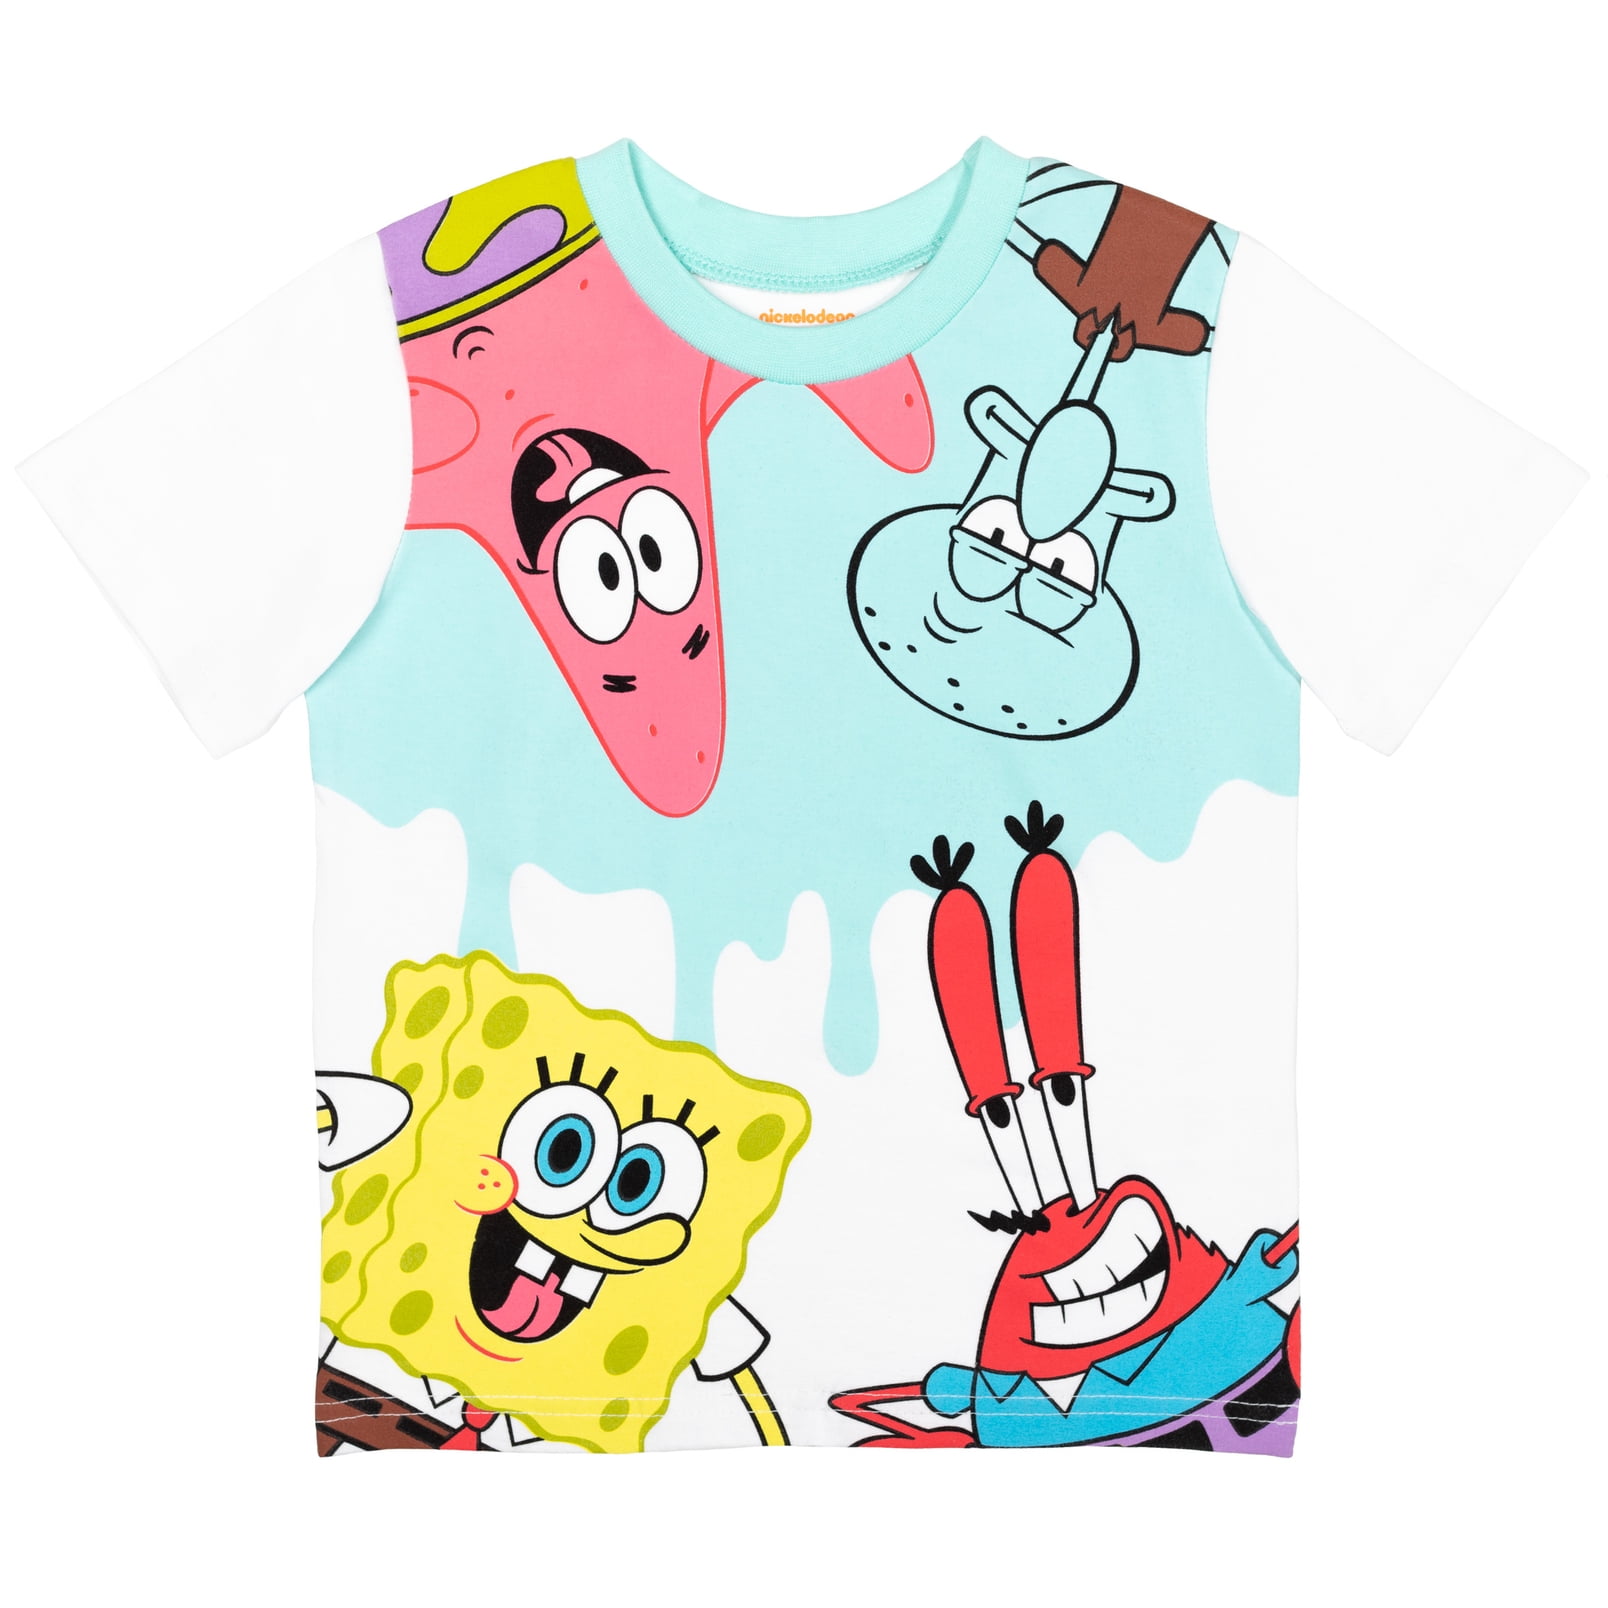 Spongebob Shirt Patrick Star Nickelodeon Halloween Costume Toddler